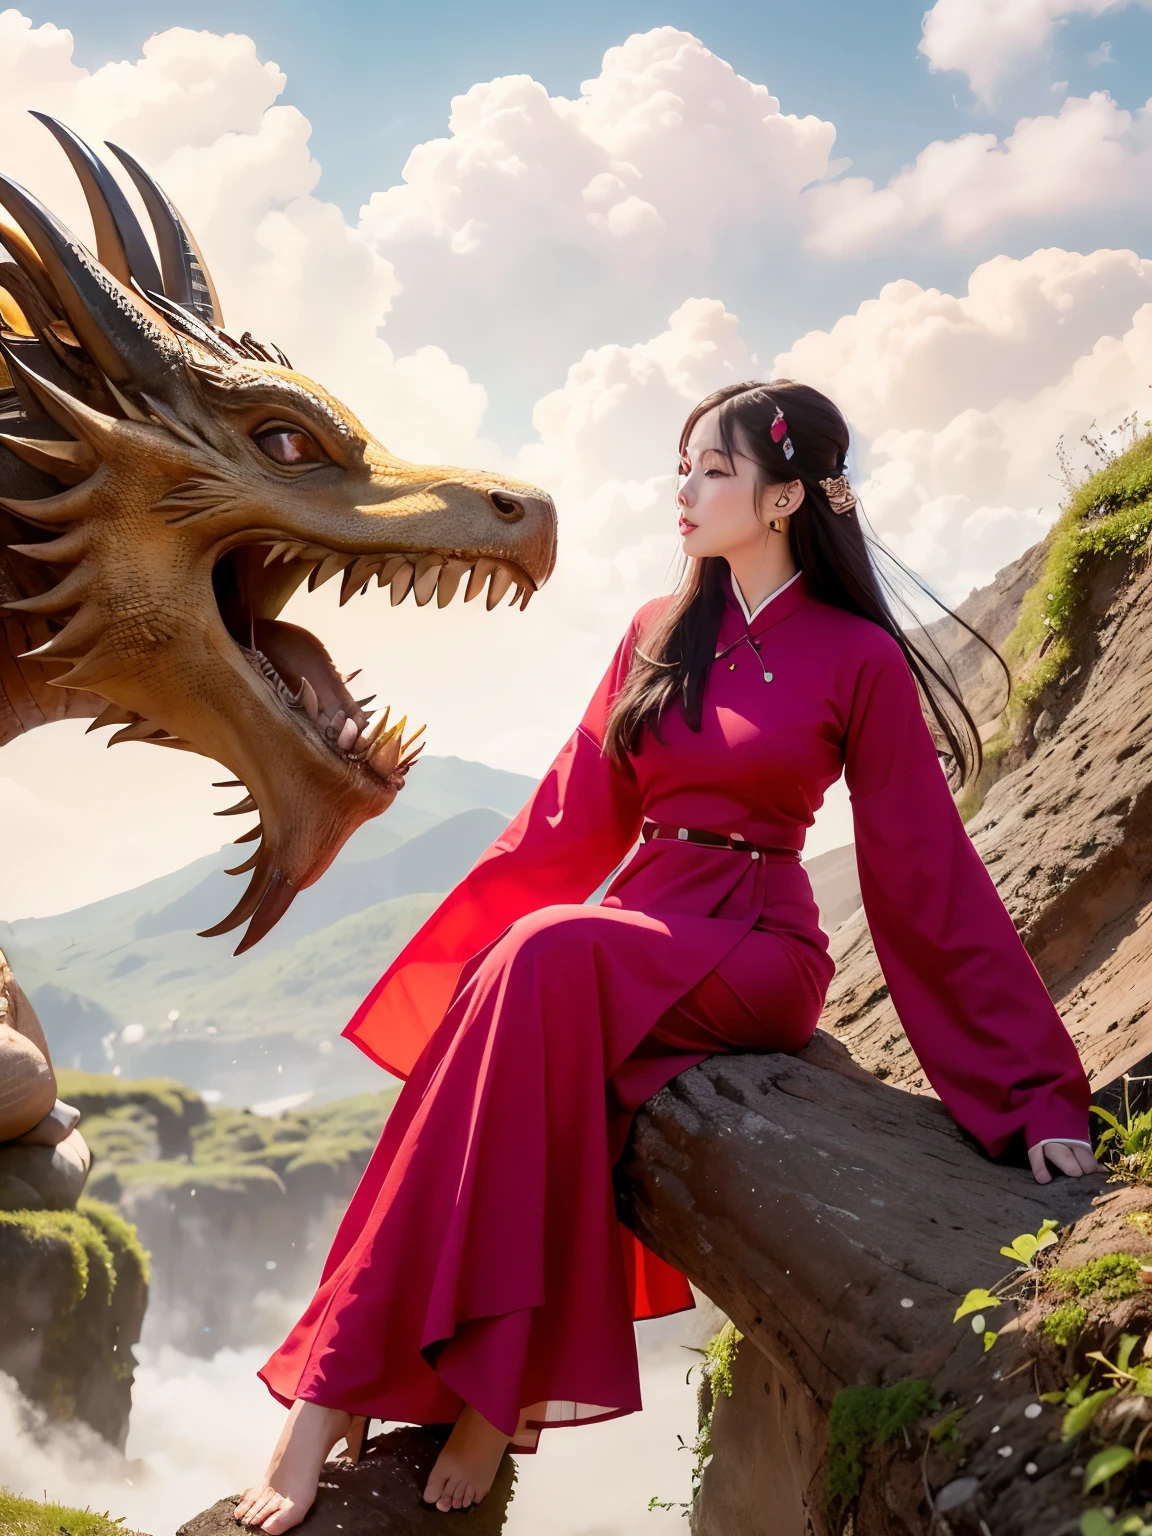 Uma linda garota com vestido longo vietnamita, um dragão chinês gigante, Arte Realista, 8K, 